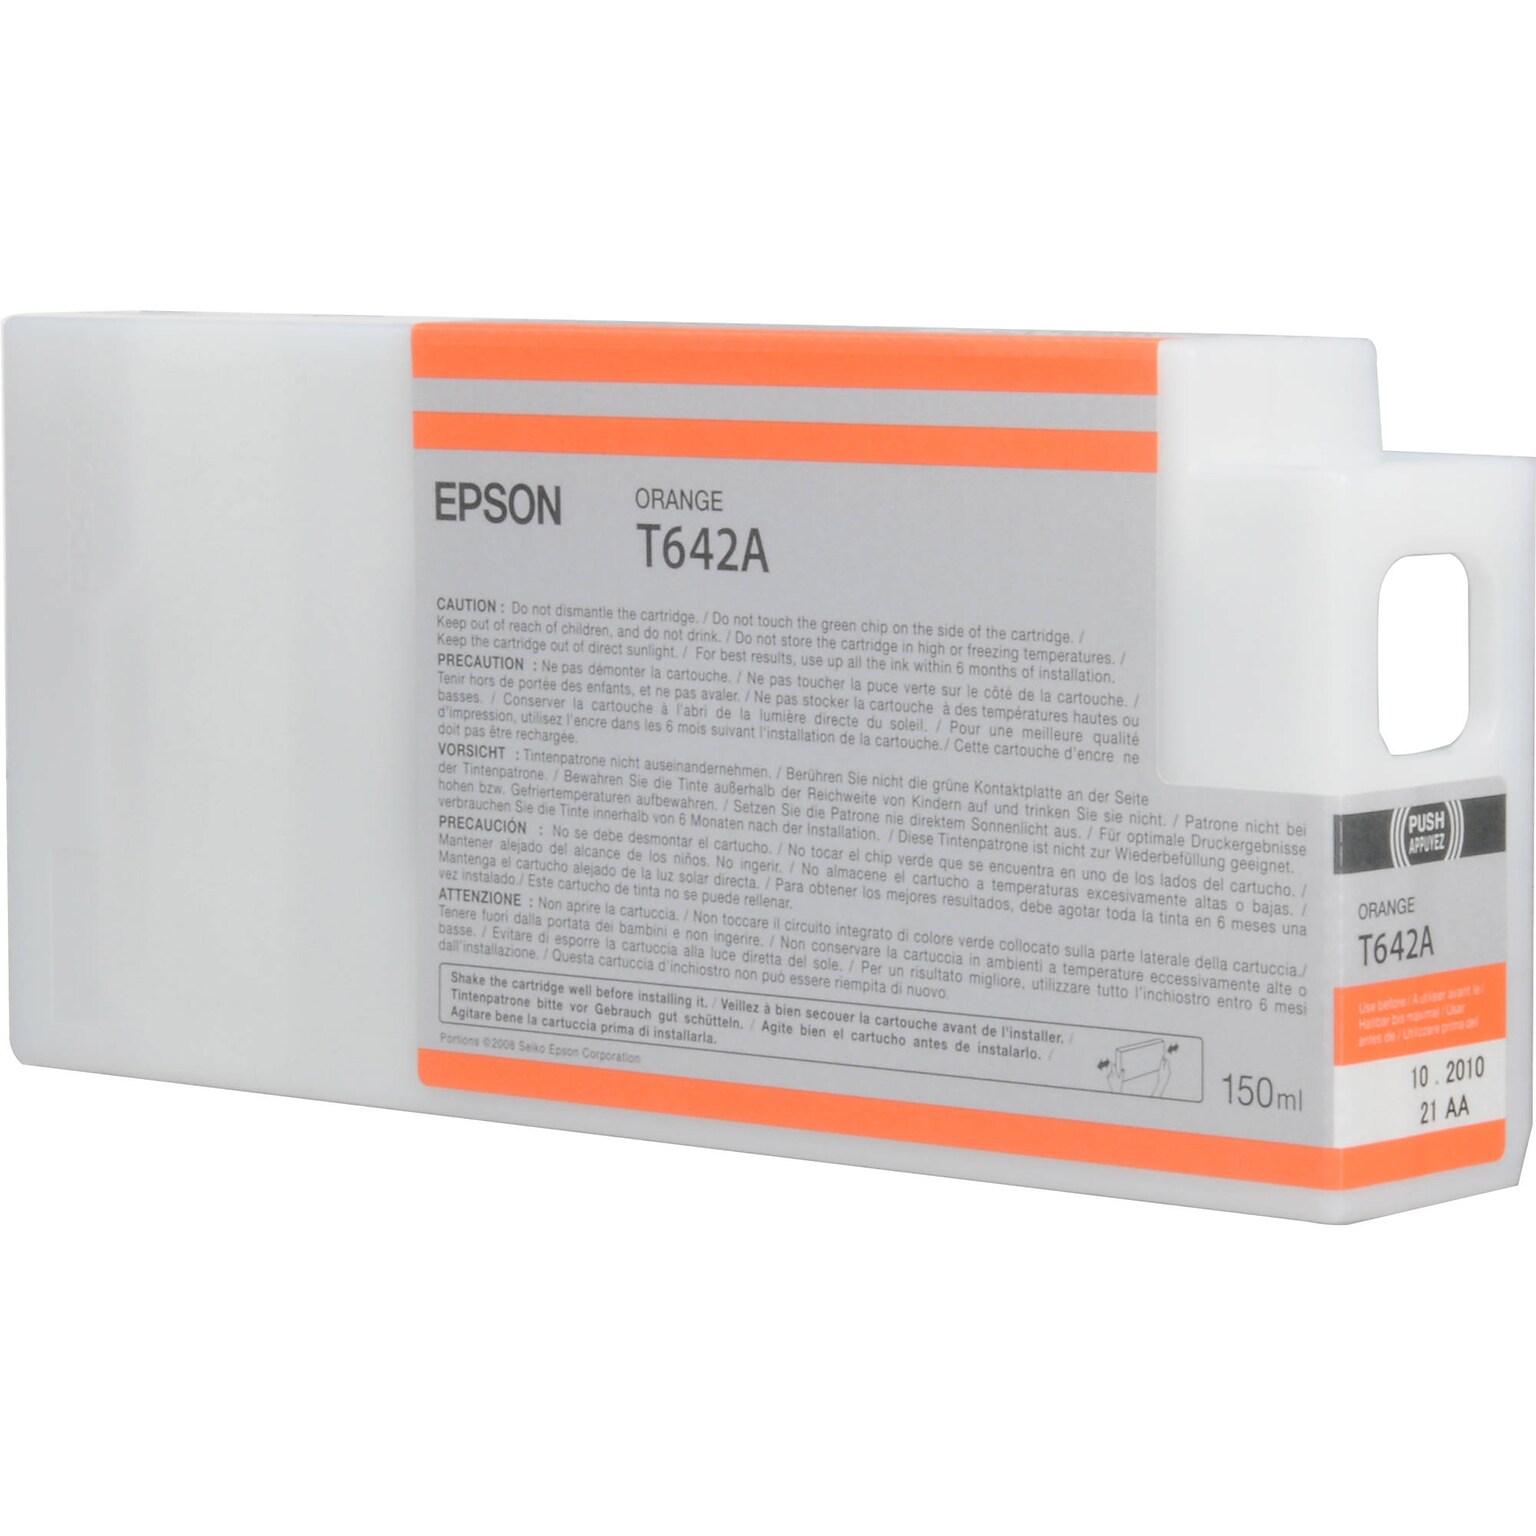 Epson T642A Orange Standard Yield Ink Cartridge